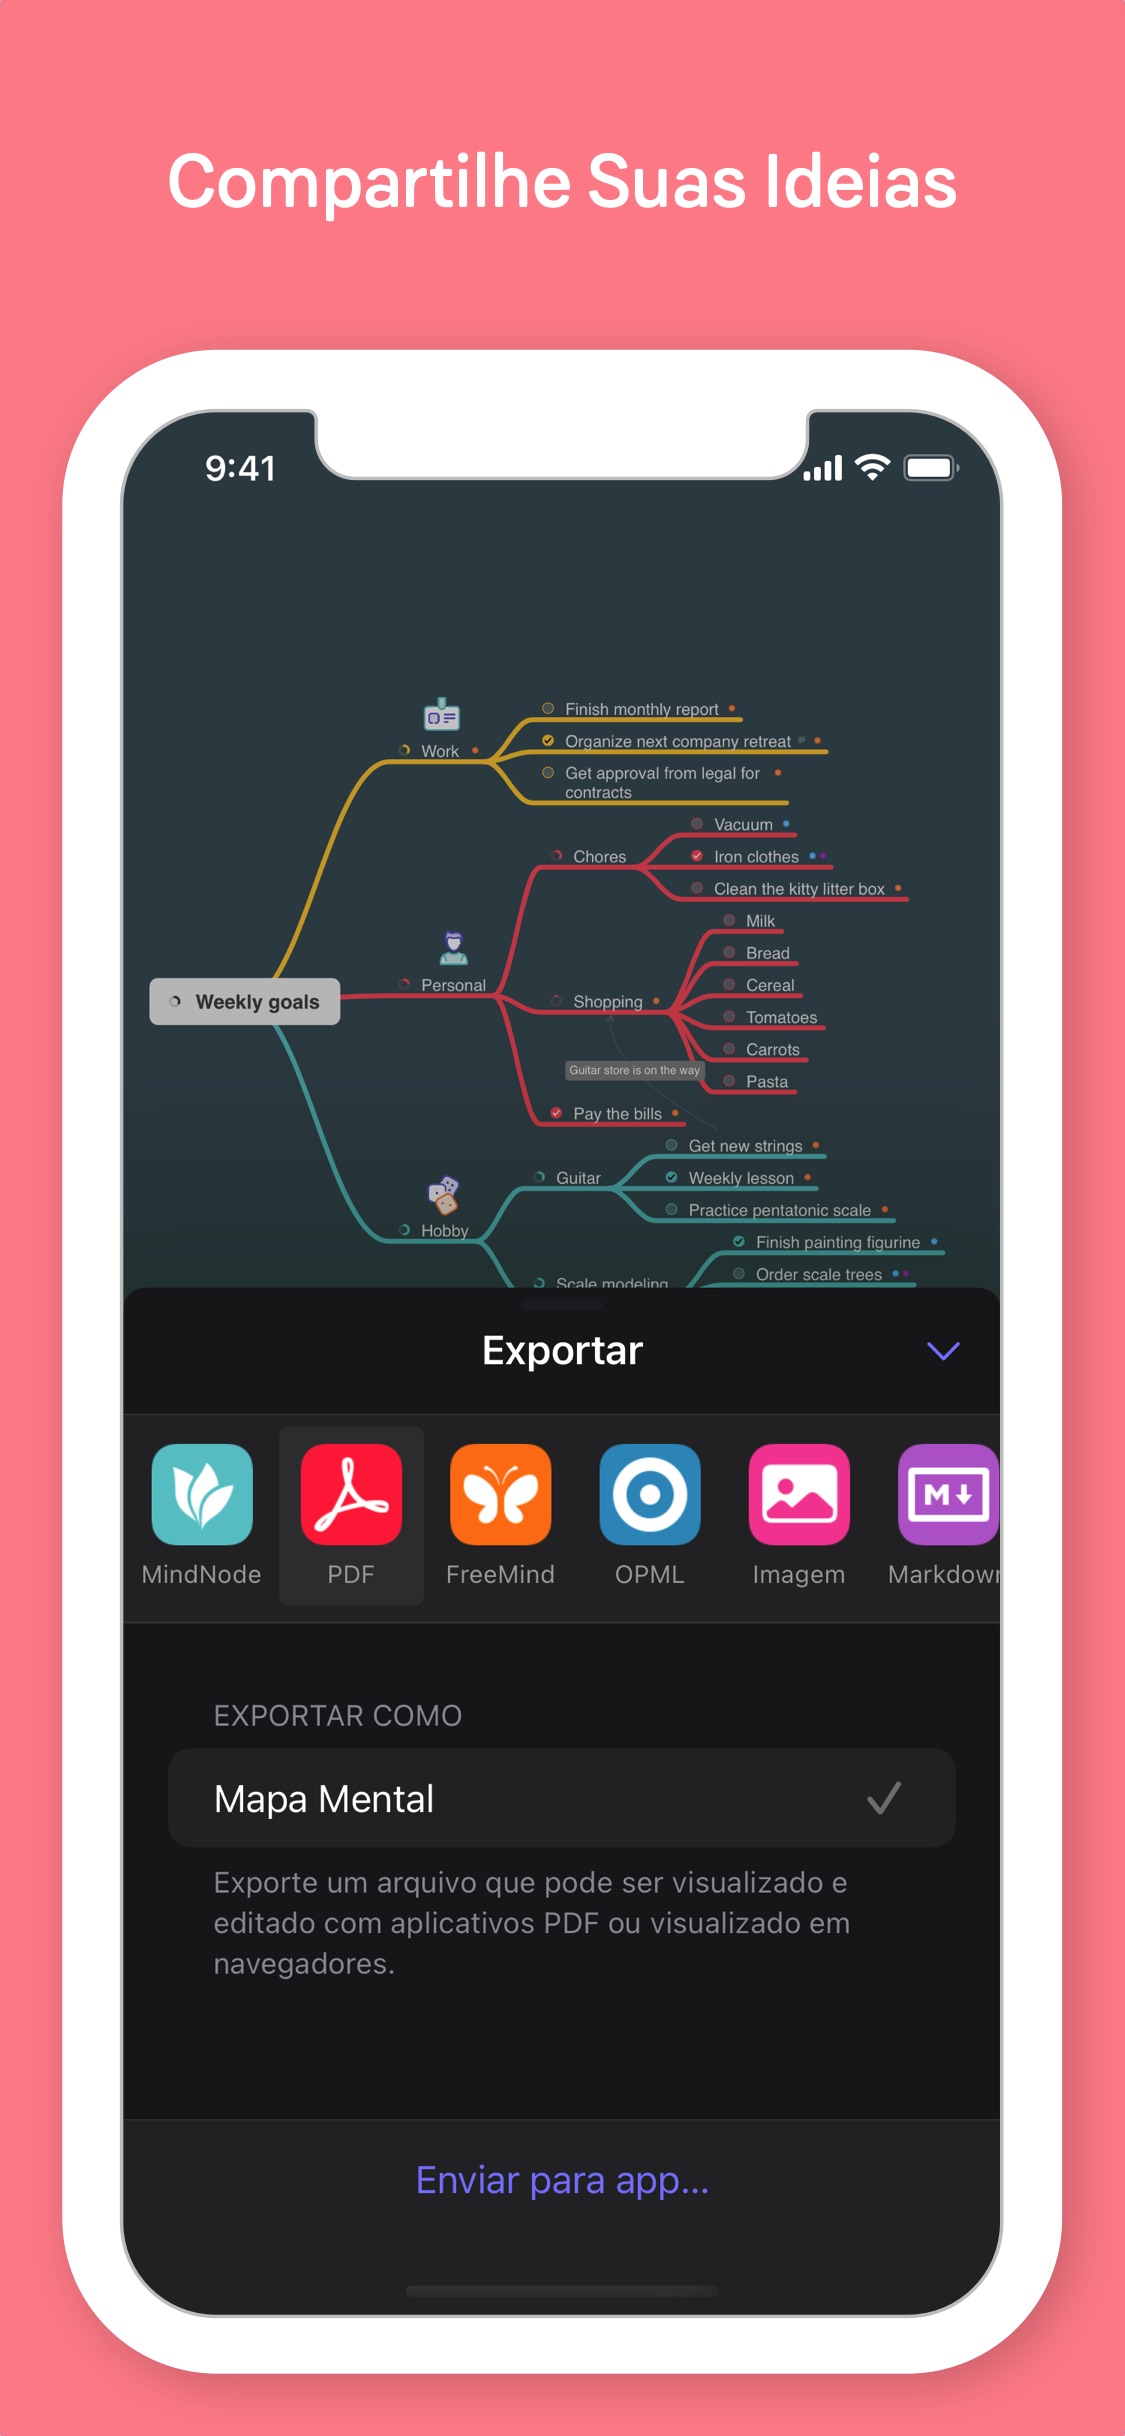 Screenshot do app MindNode - Mind Map & Outline